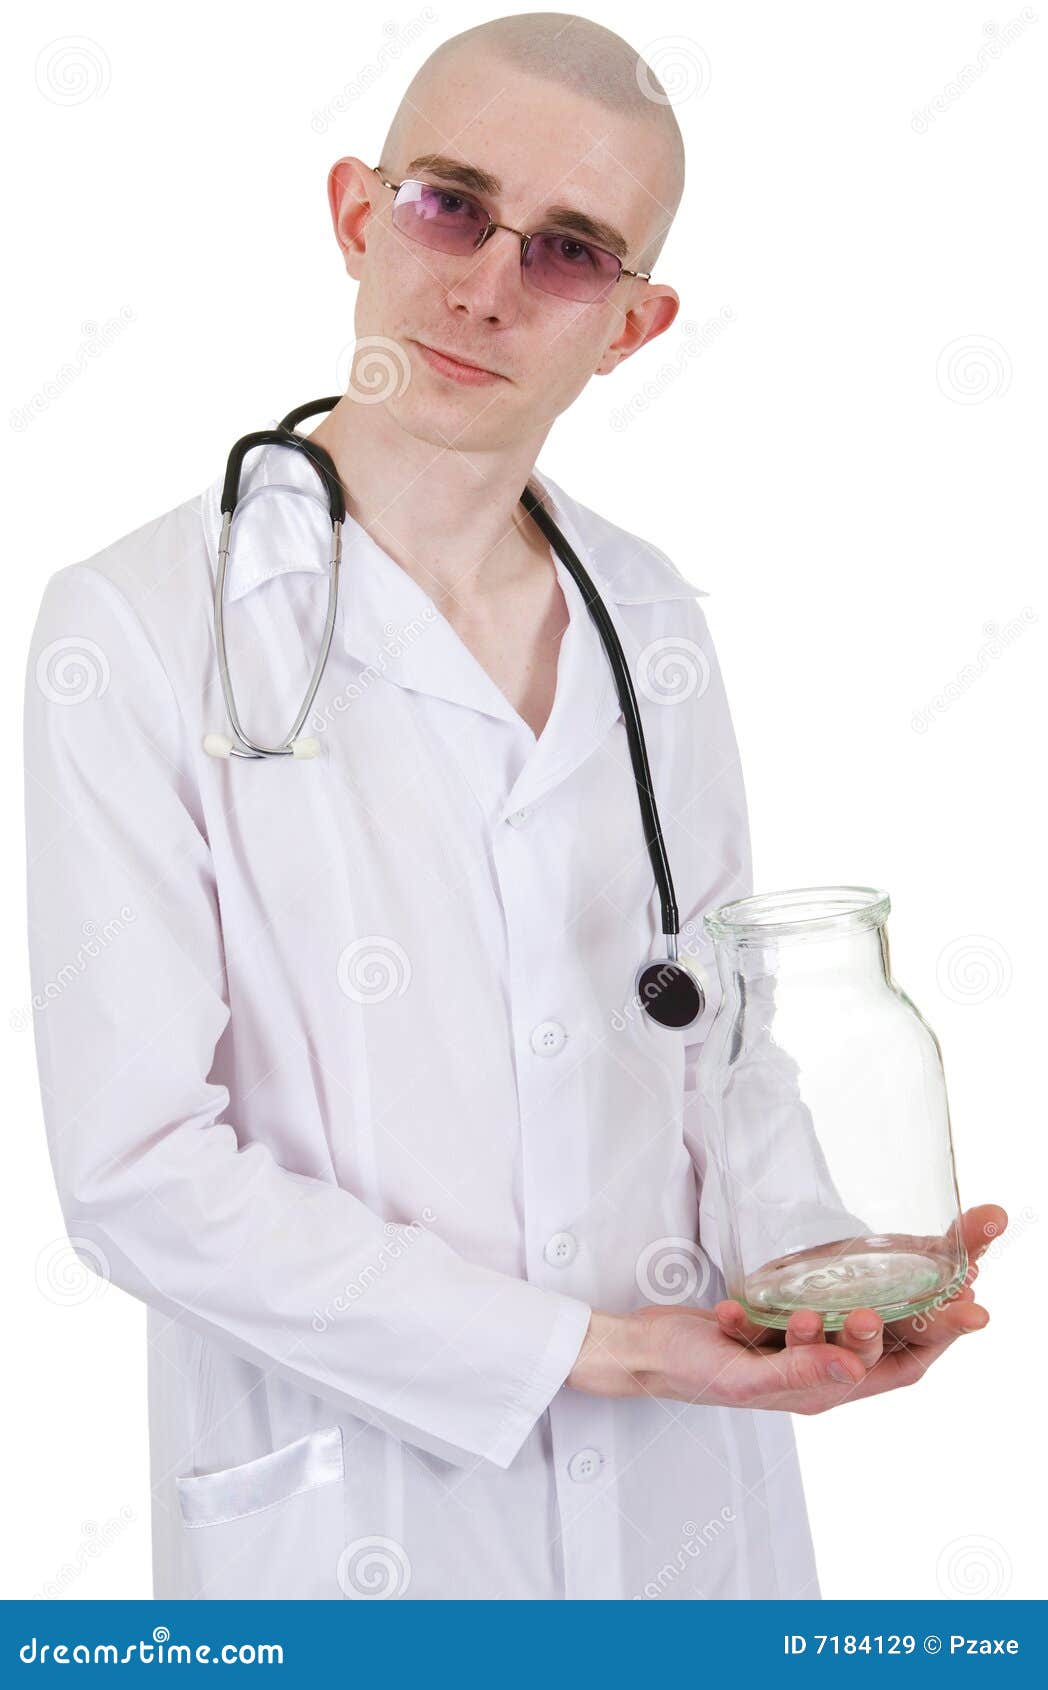 man in doctor's smock